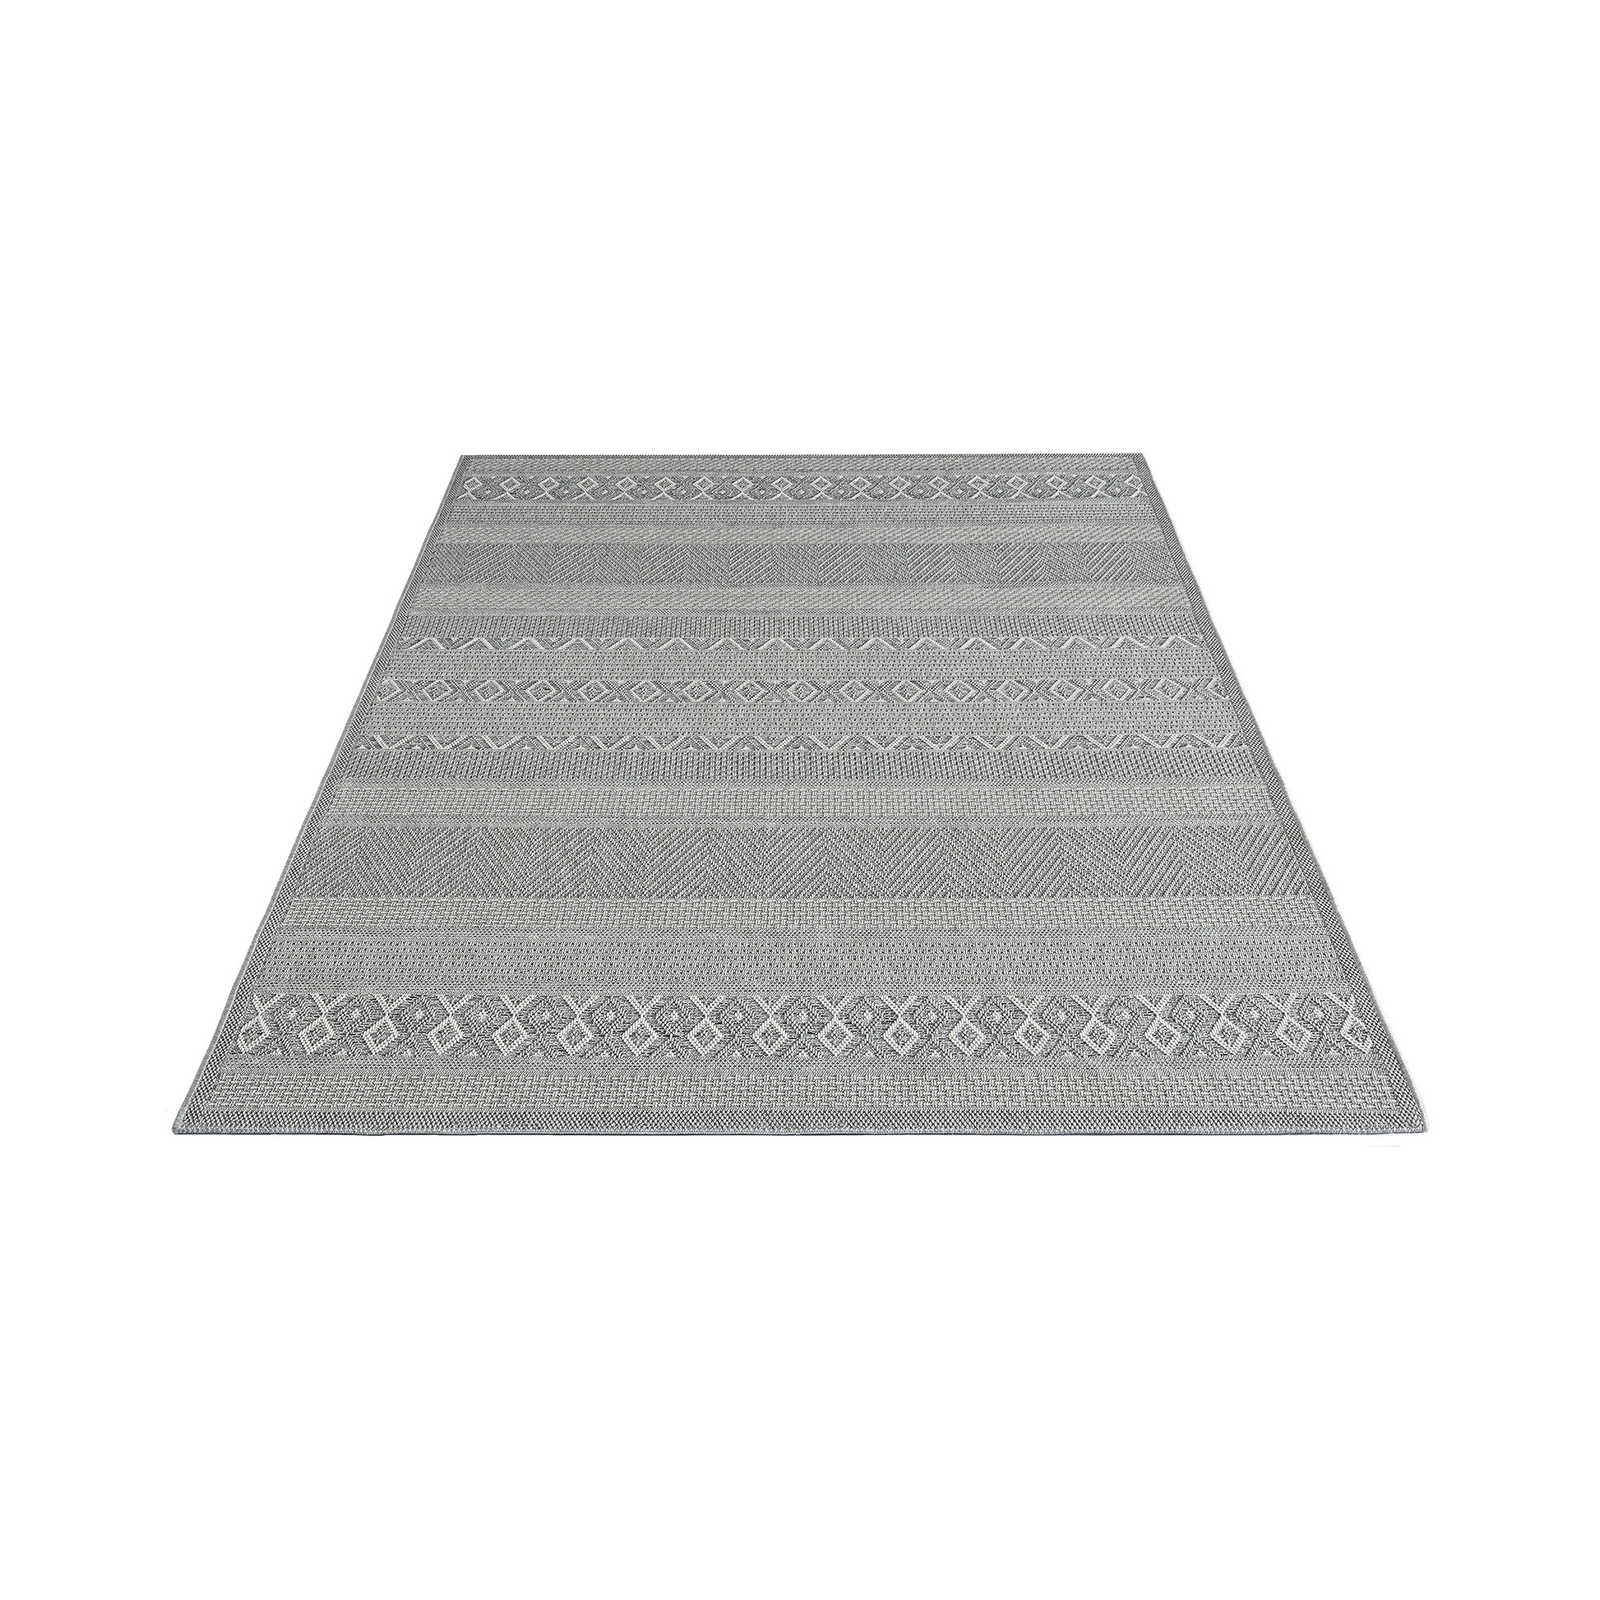 Buitenkleed met eenvoudig patroon in grijs - 220 x 160 cm
